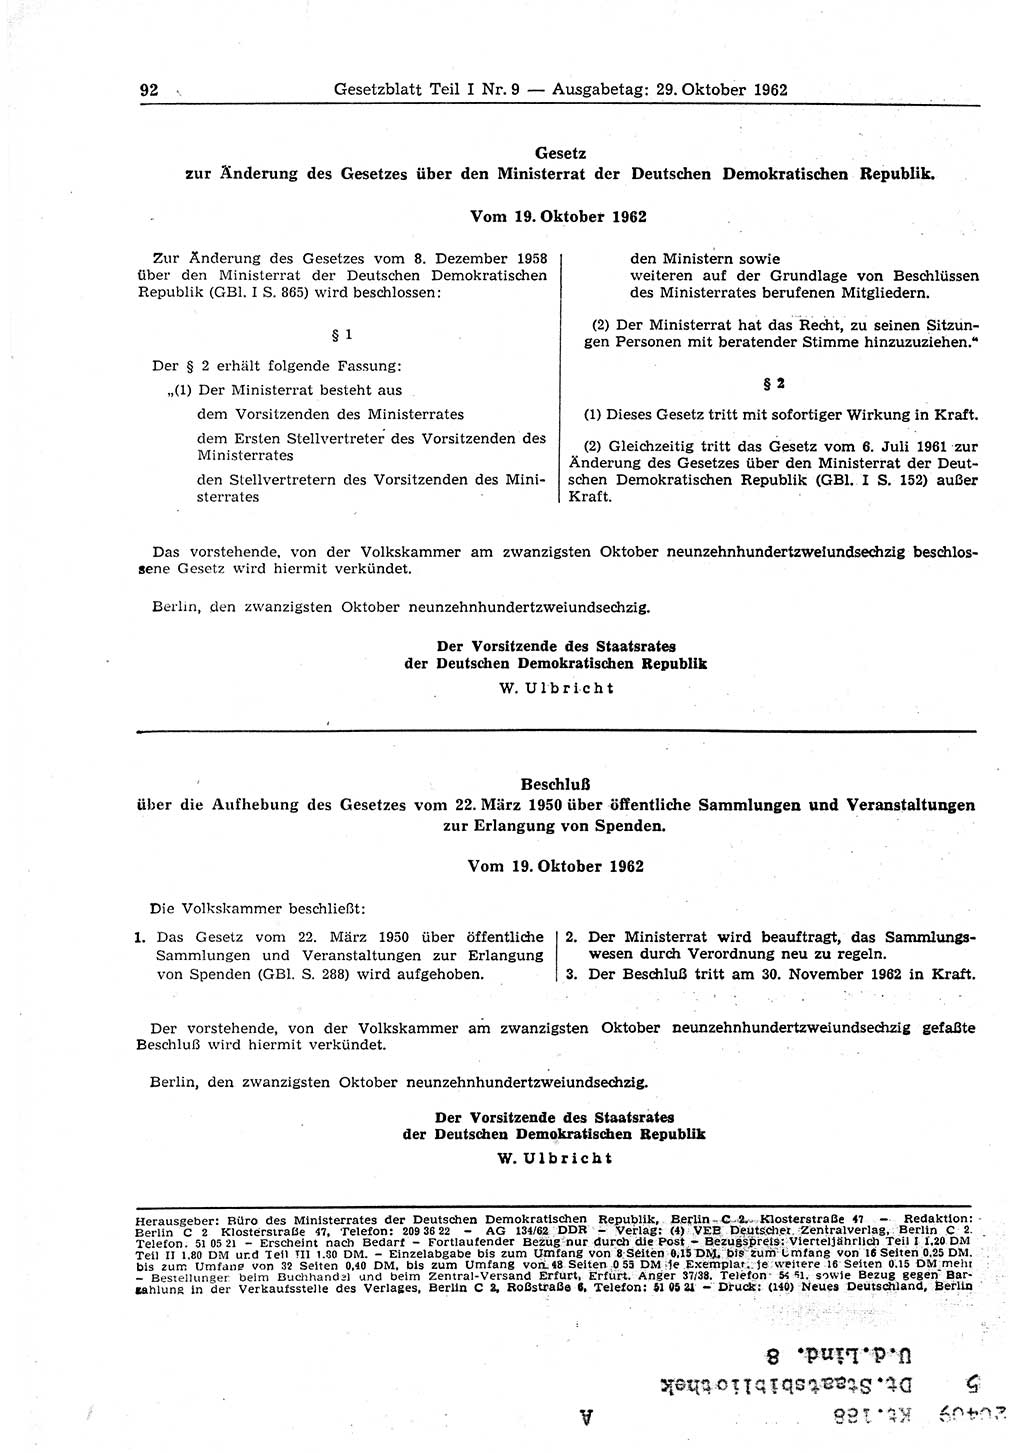 Gesetzblatt (GBl.) der Deutschen Demokratischen Republik (DDR) Teil Ⅰ 1962, Seite 92 (GBl. DDR Ⅰ 1962, S. 92)